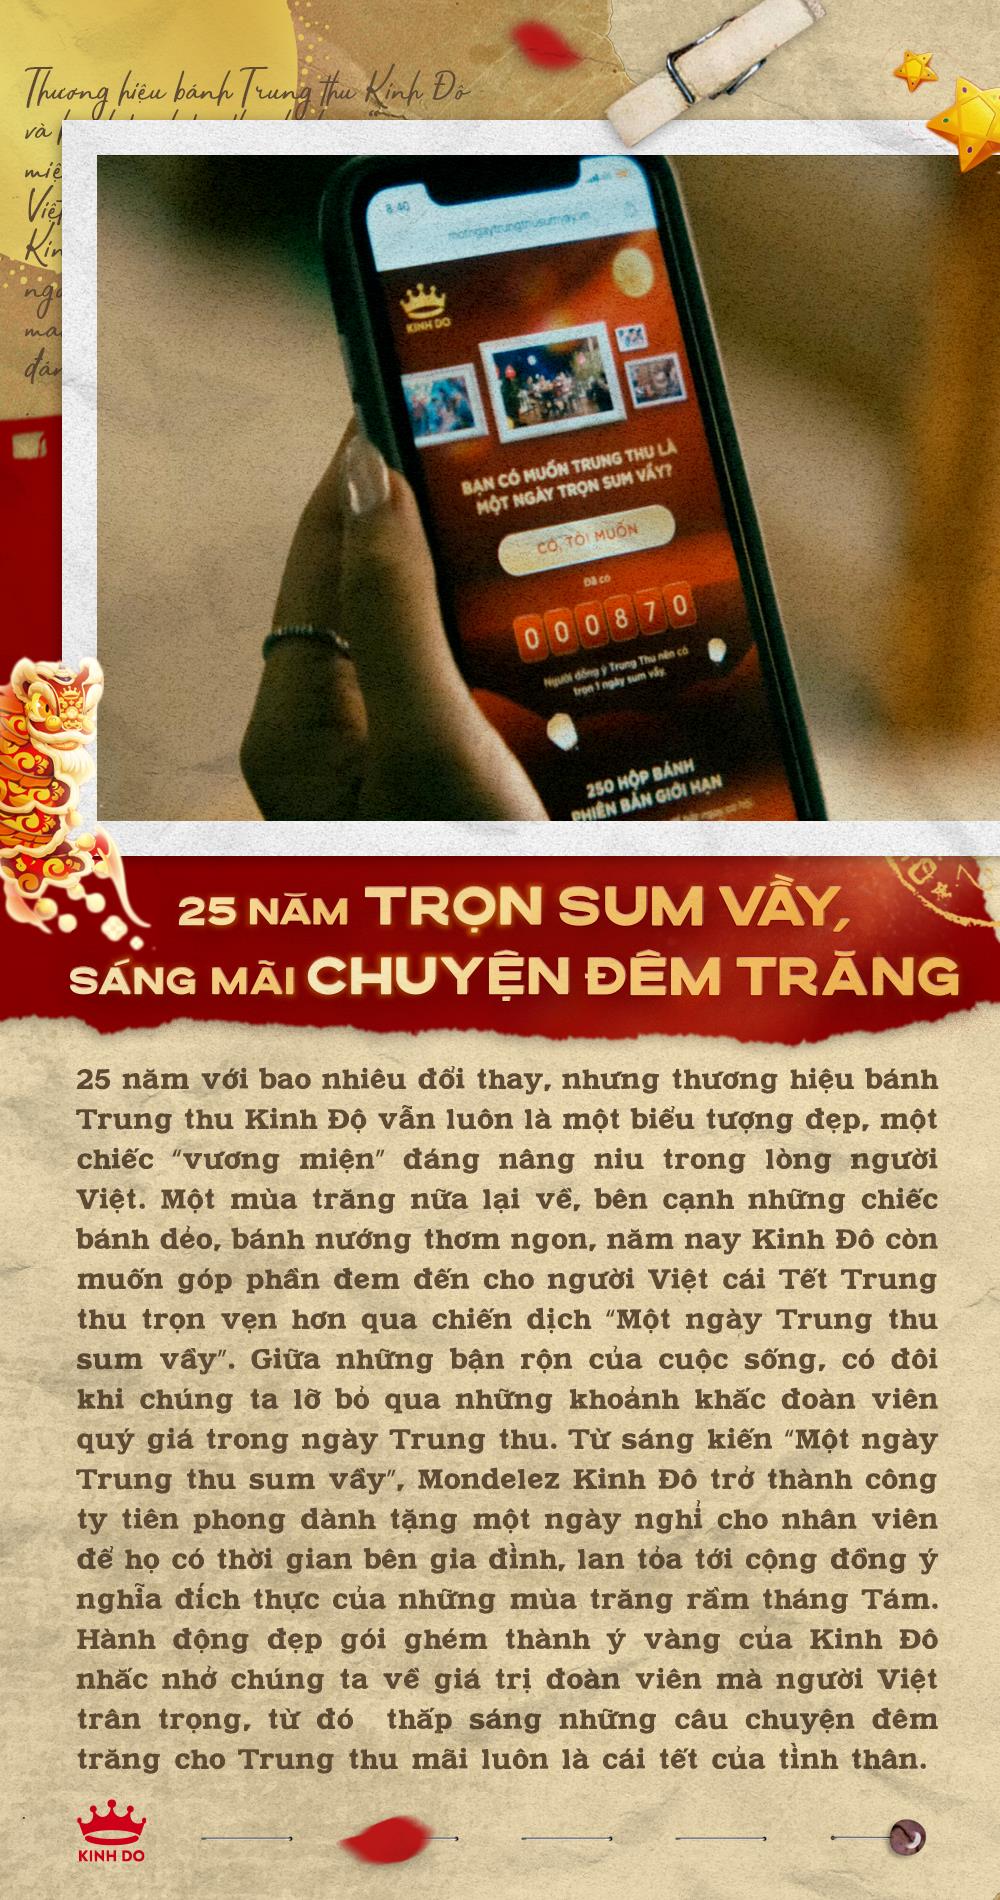 Thương hiệu bánh Trung thu Kinh Đô và hành trình trở thành chiếc &quot;vương miện&quot; đáng quý trong lòng người Việt - Ảnh 6.